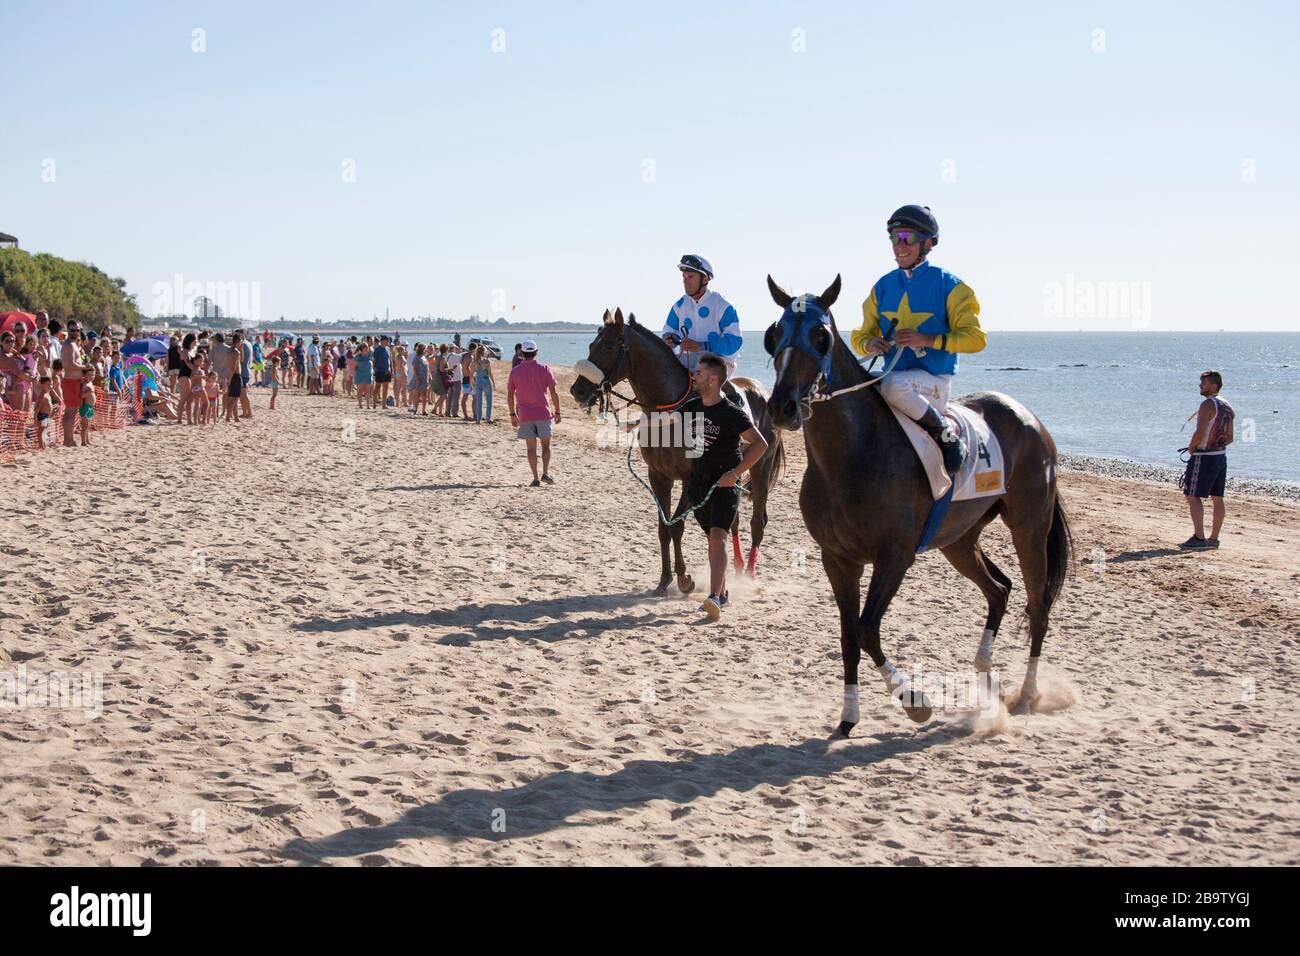 L'incontro annuale di cavallo di agosto si svolge sulla spiaggia di Sanlucar de Barrameda, Cadice, Spagna. 3 agosto 2017. Foto Stock